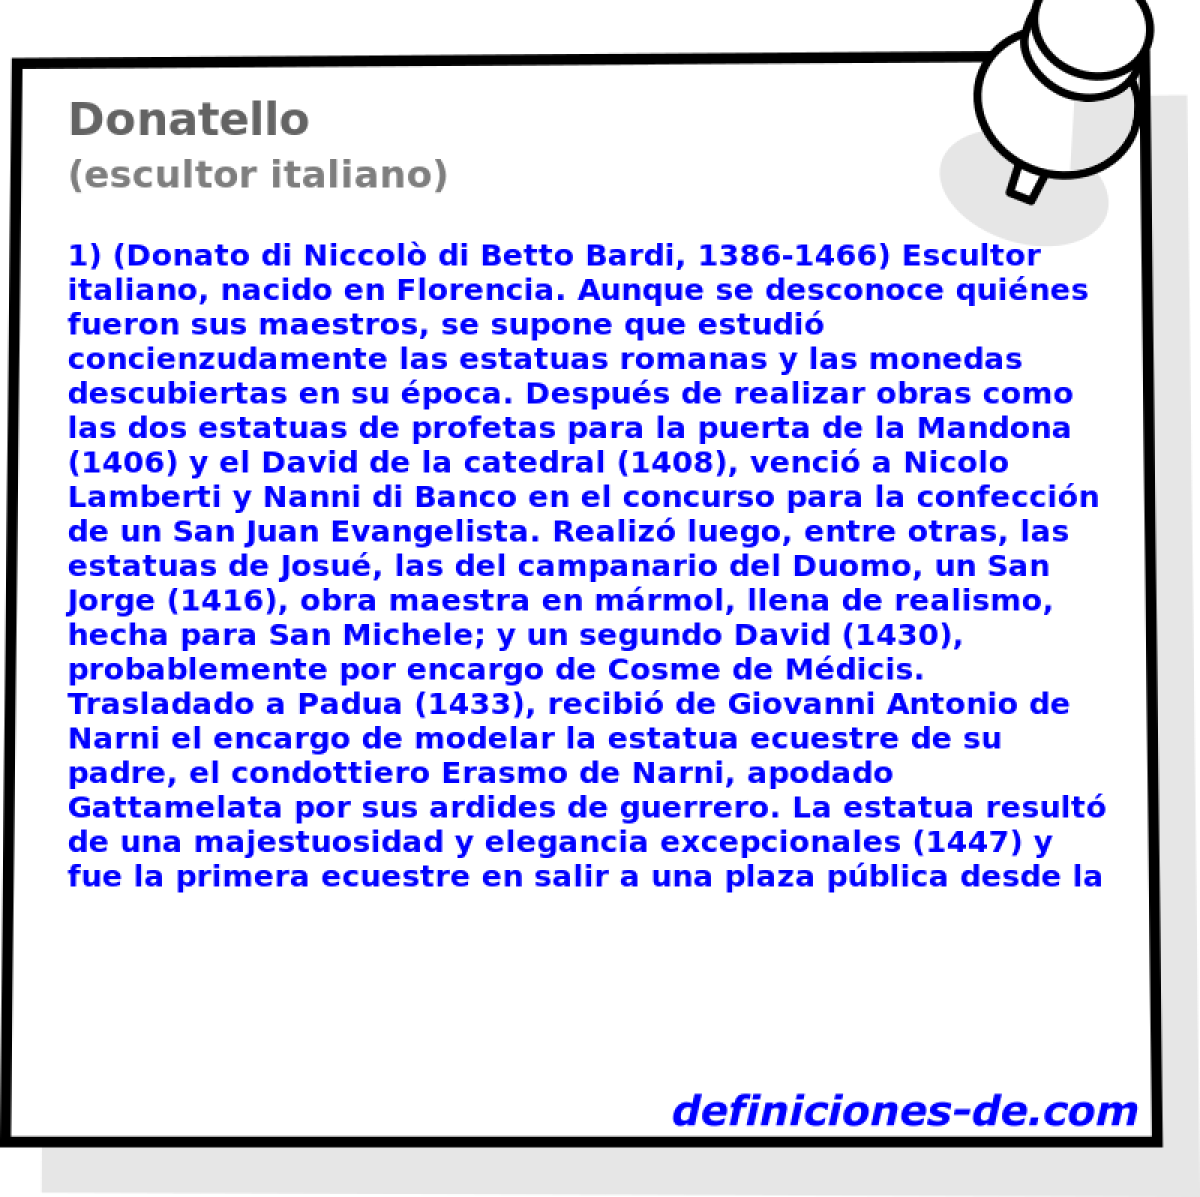 Donatello (escultor italiano)